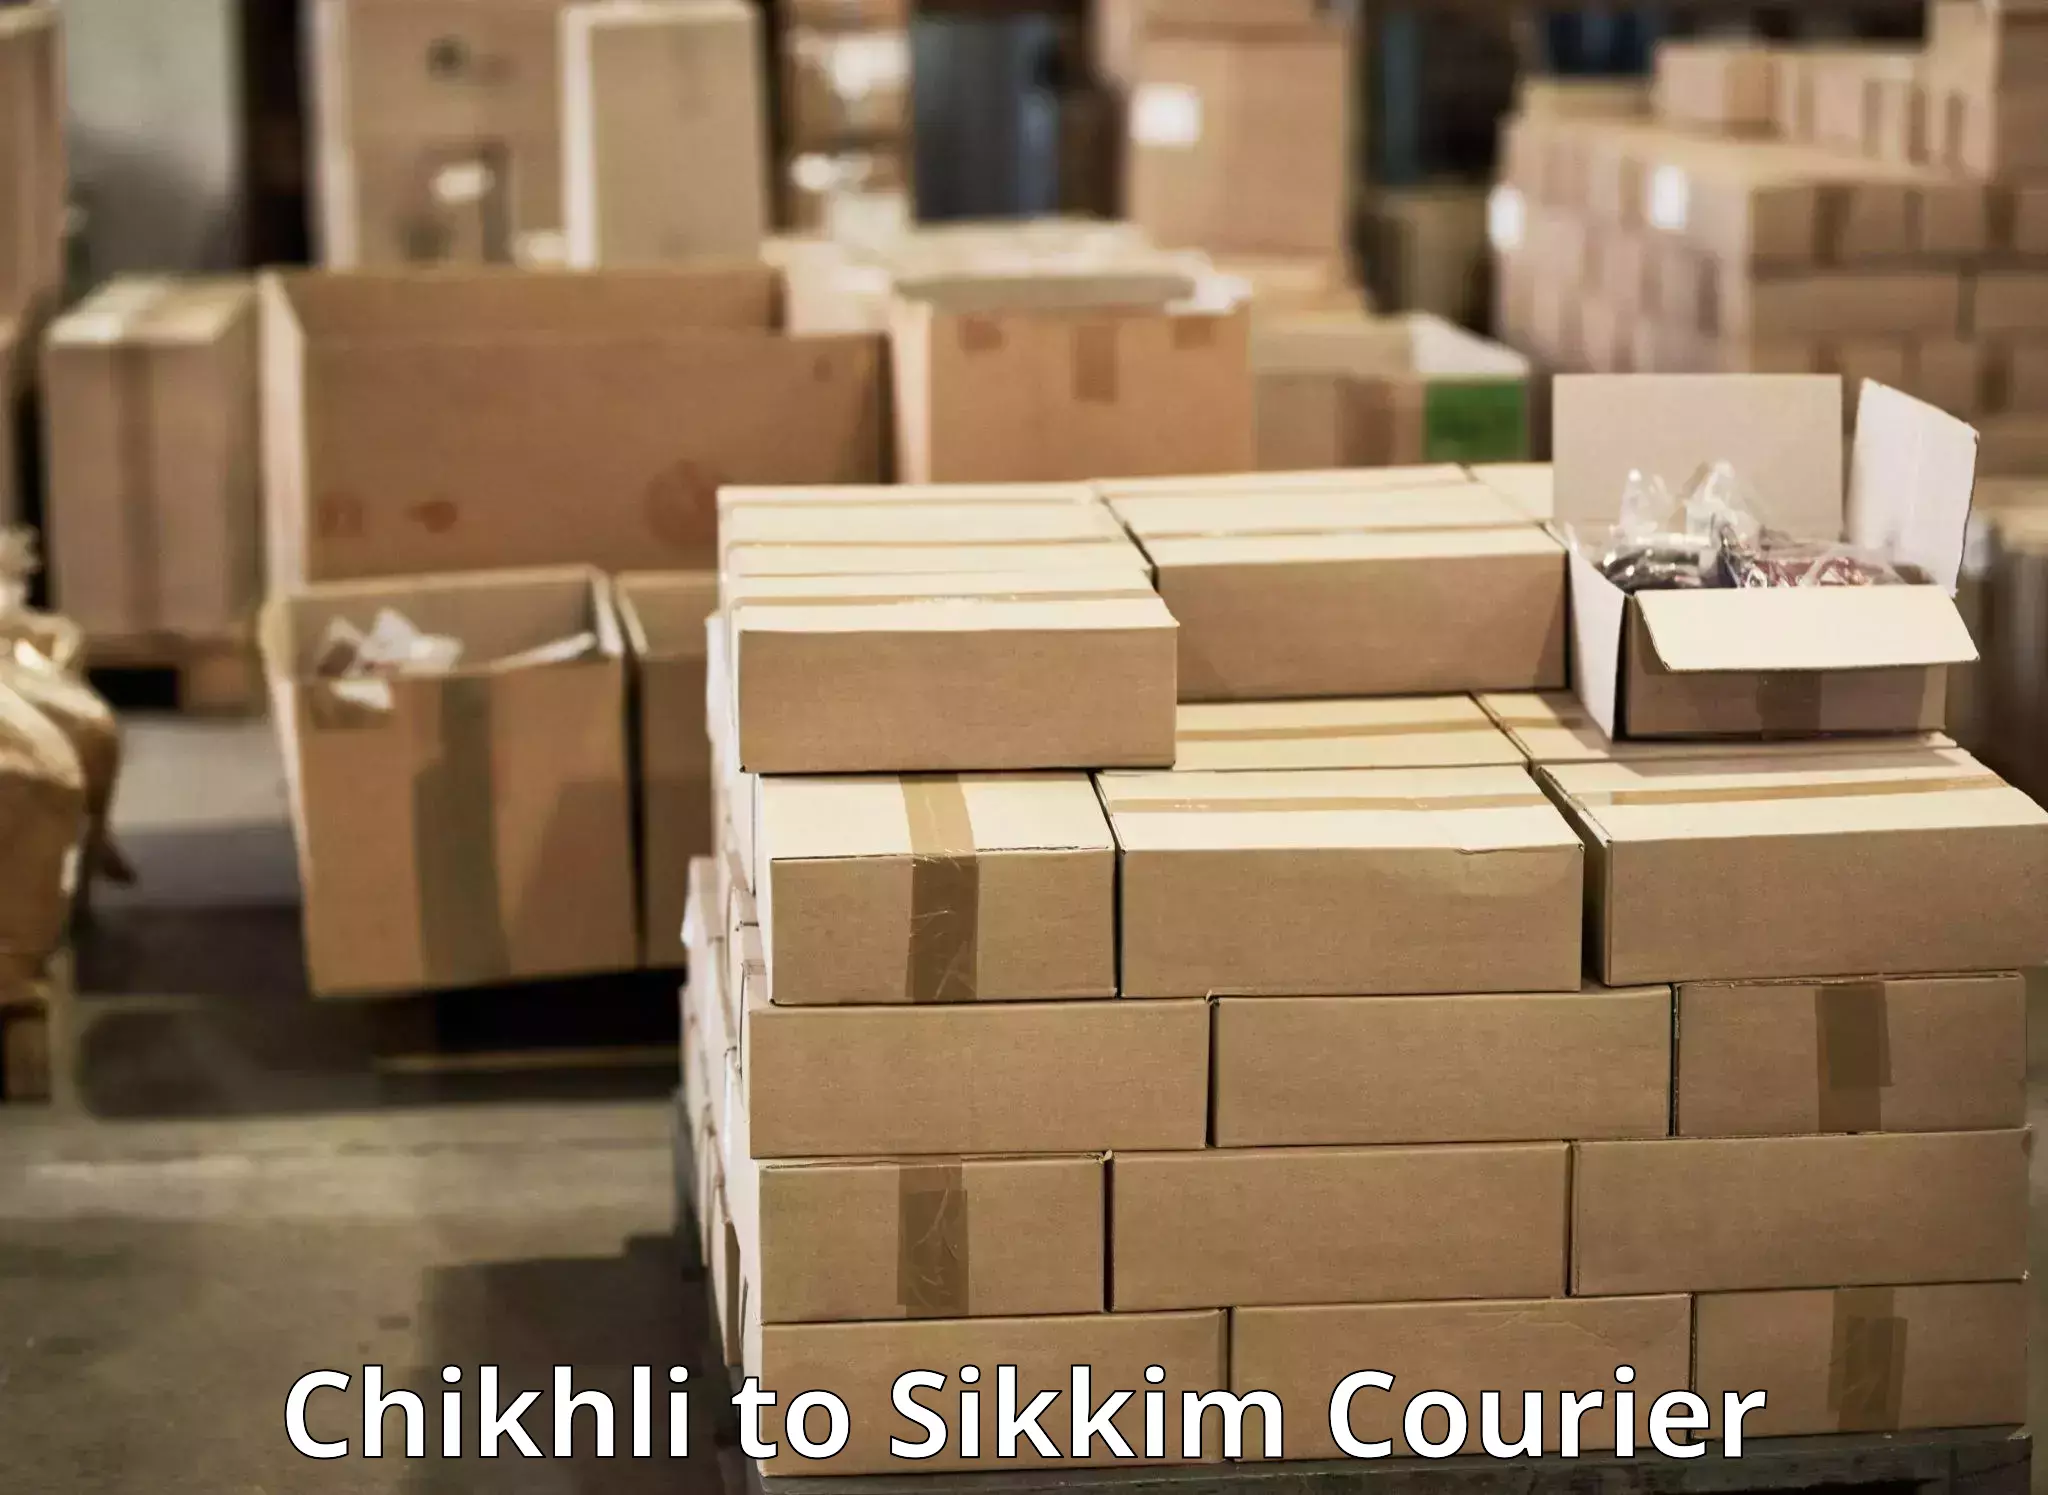 Door-to-door freight service Chikhli to Pelling